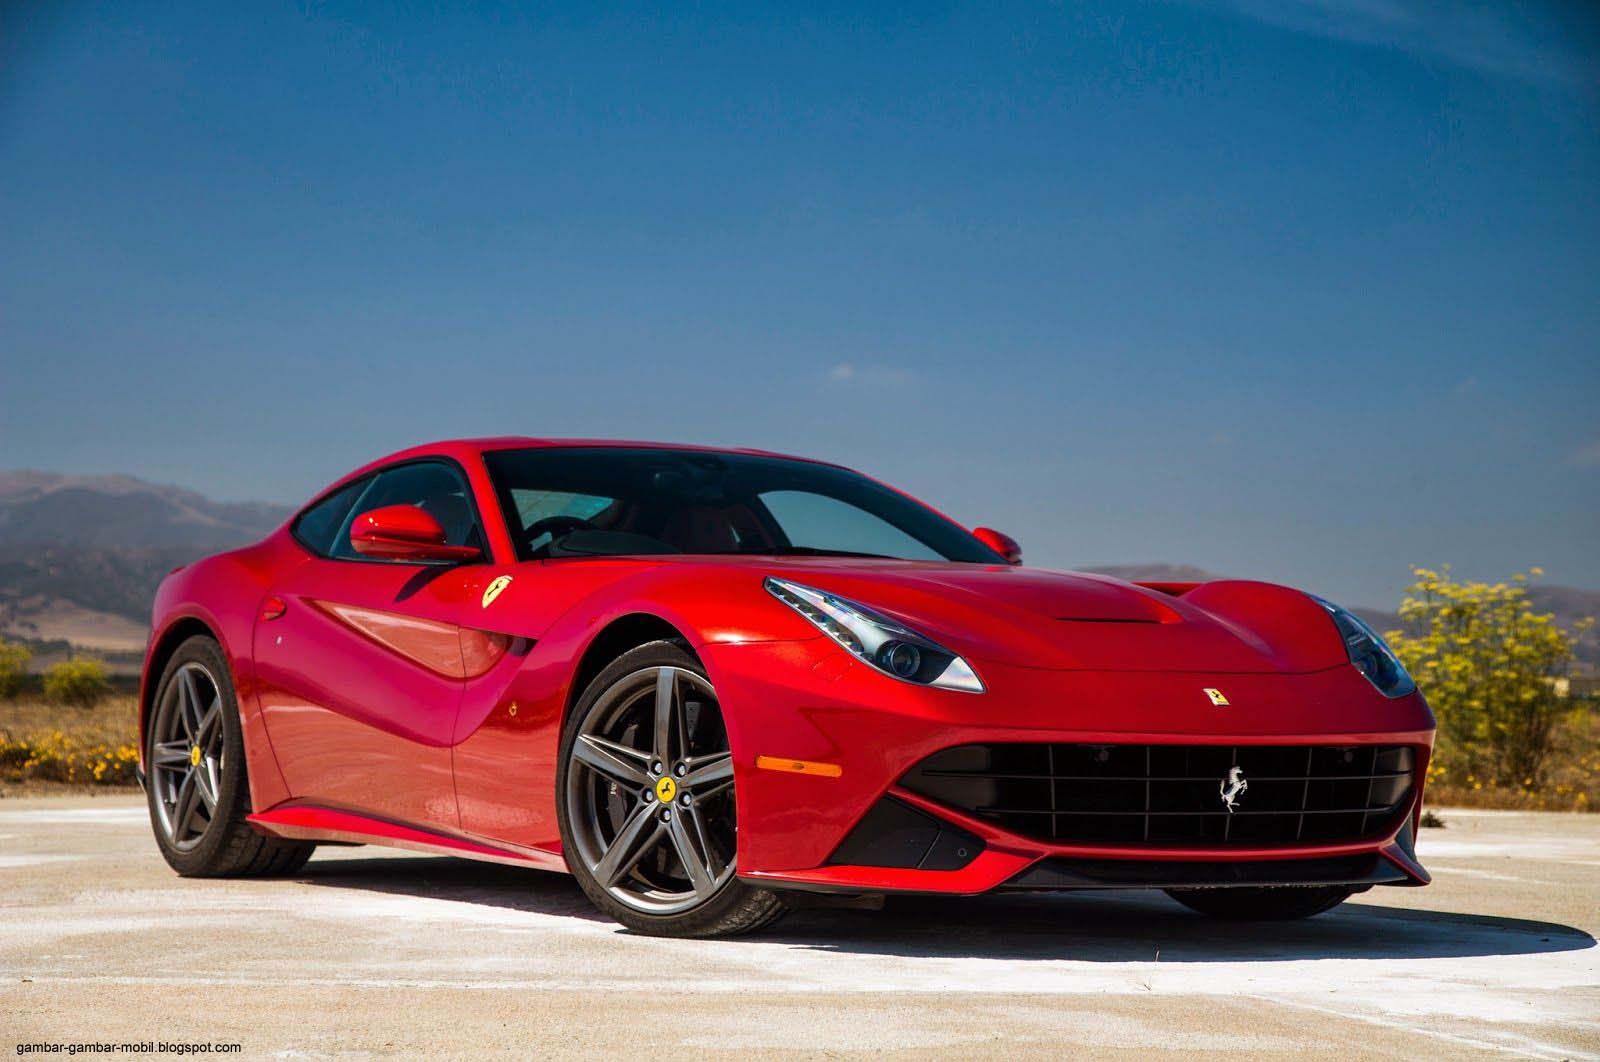 Inilah Kelebihan Mobil  Ferrari  Sebagai Mobil  Mewah Dunia Gambar  Gambar  Mobil 